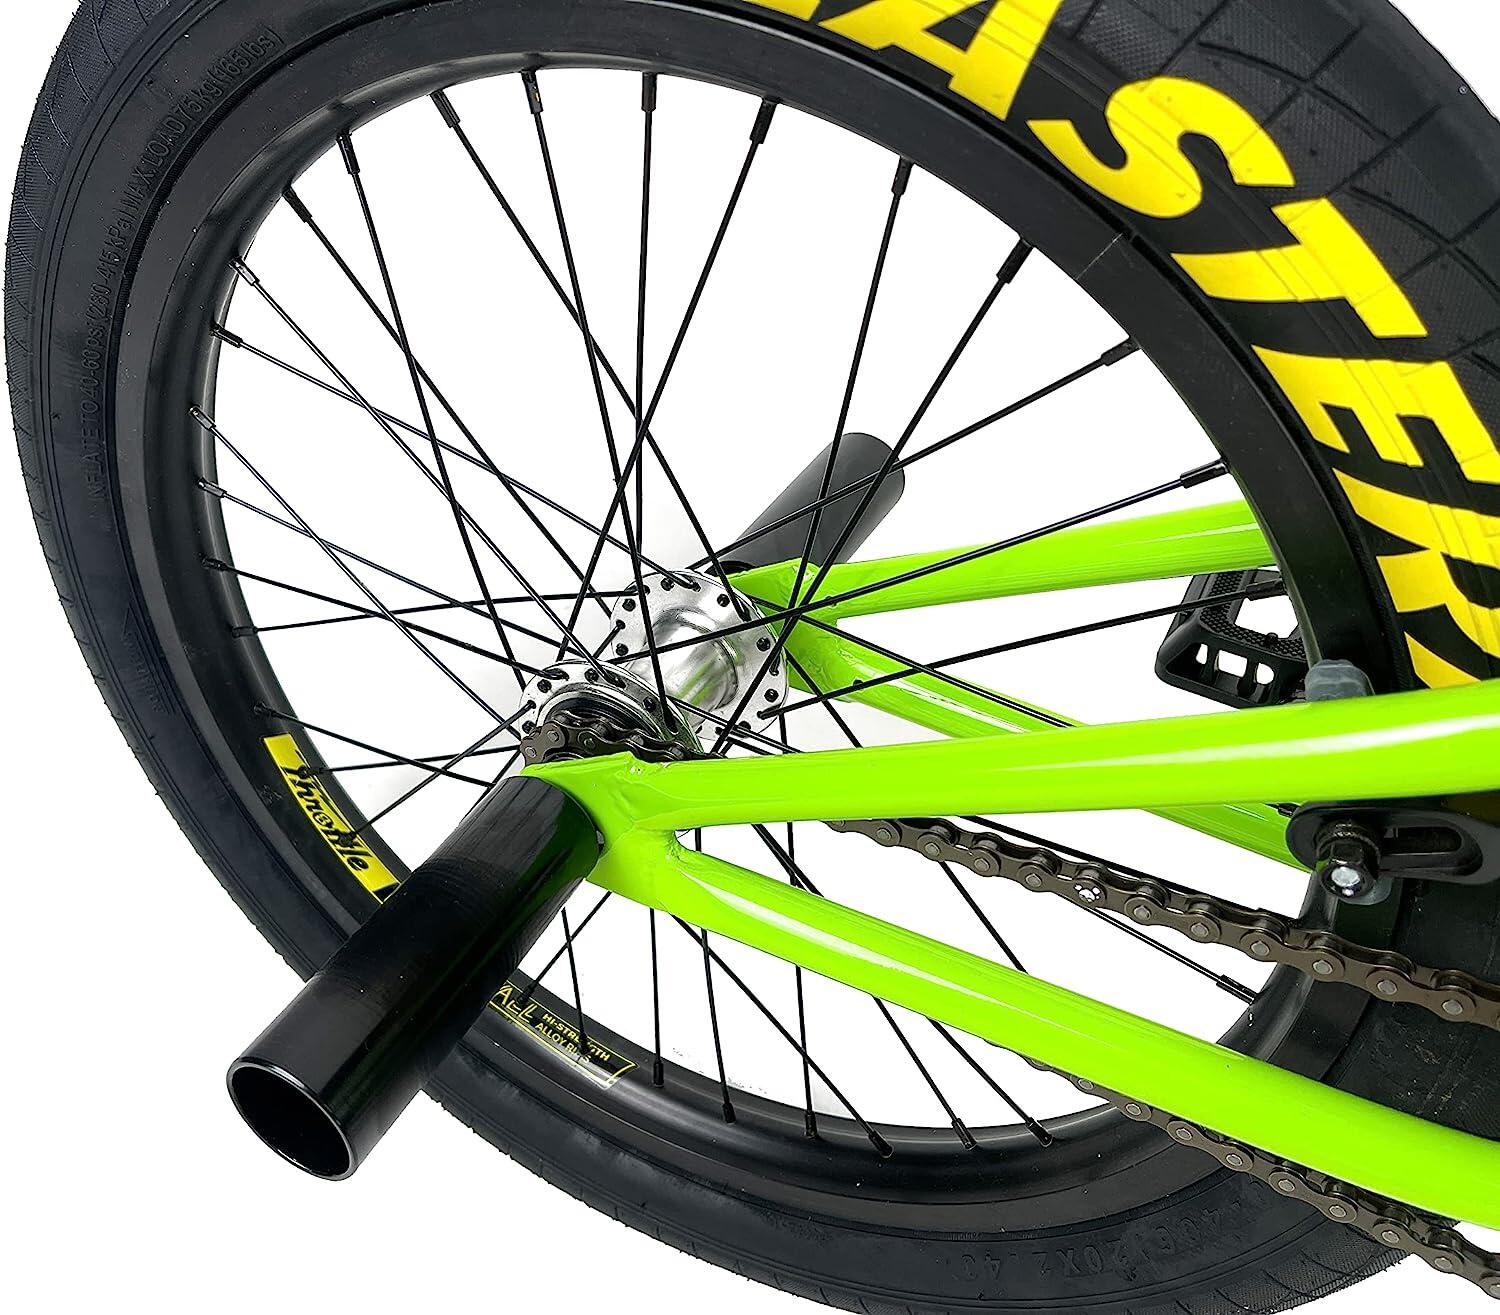 Eastern Orbit BMX Bike - Green 7/7